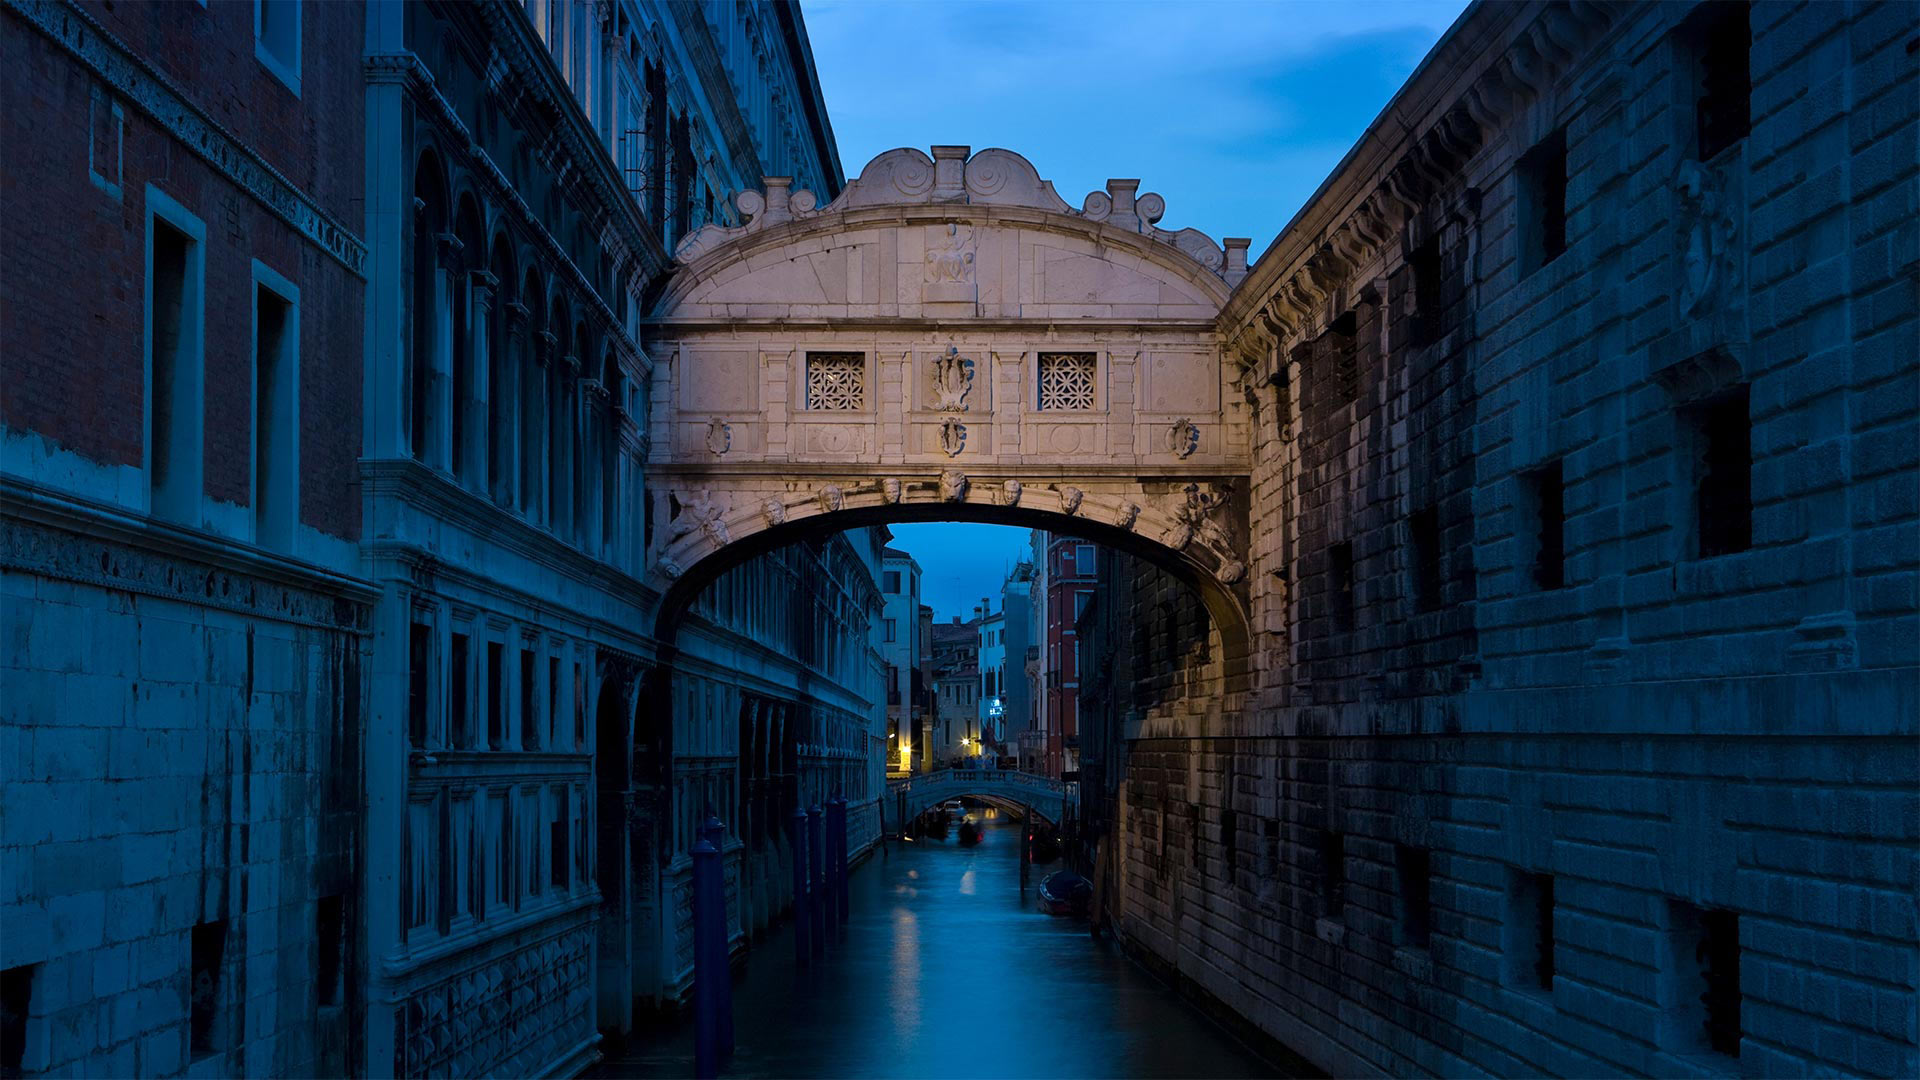 ヴェネツィアのため息橋